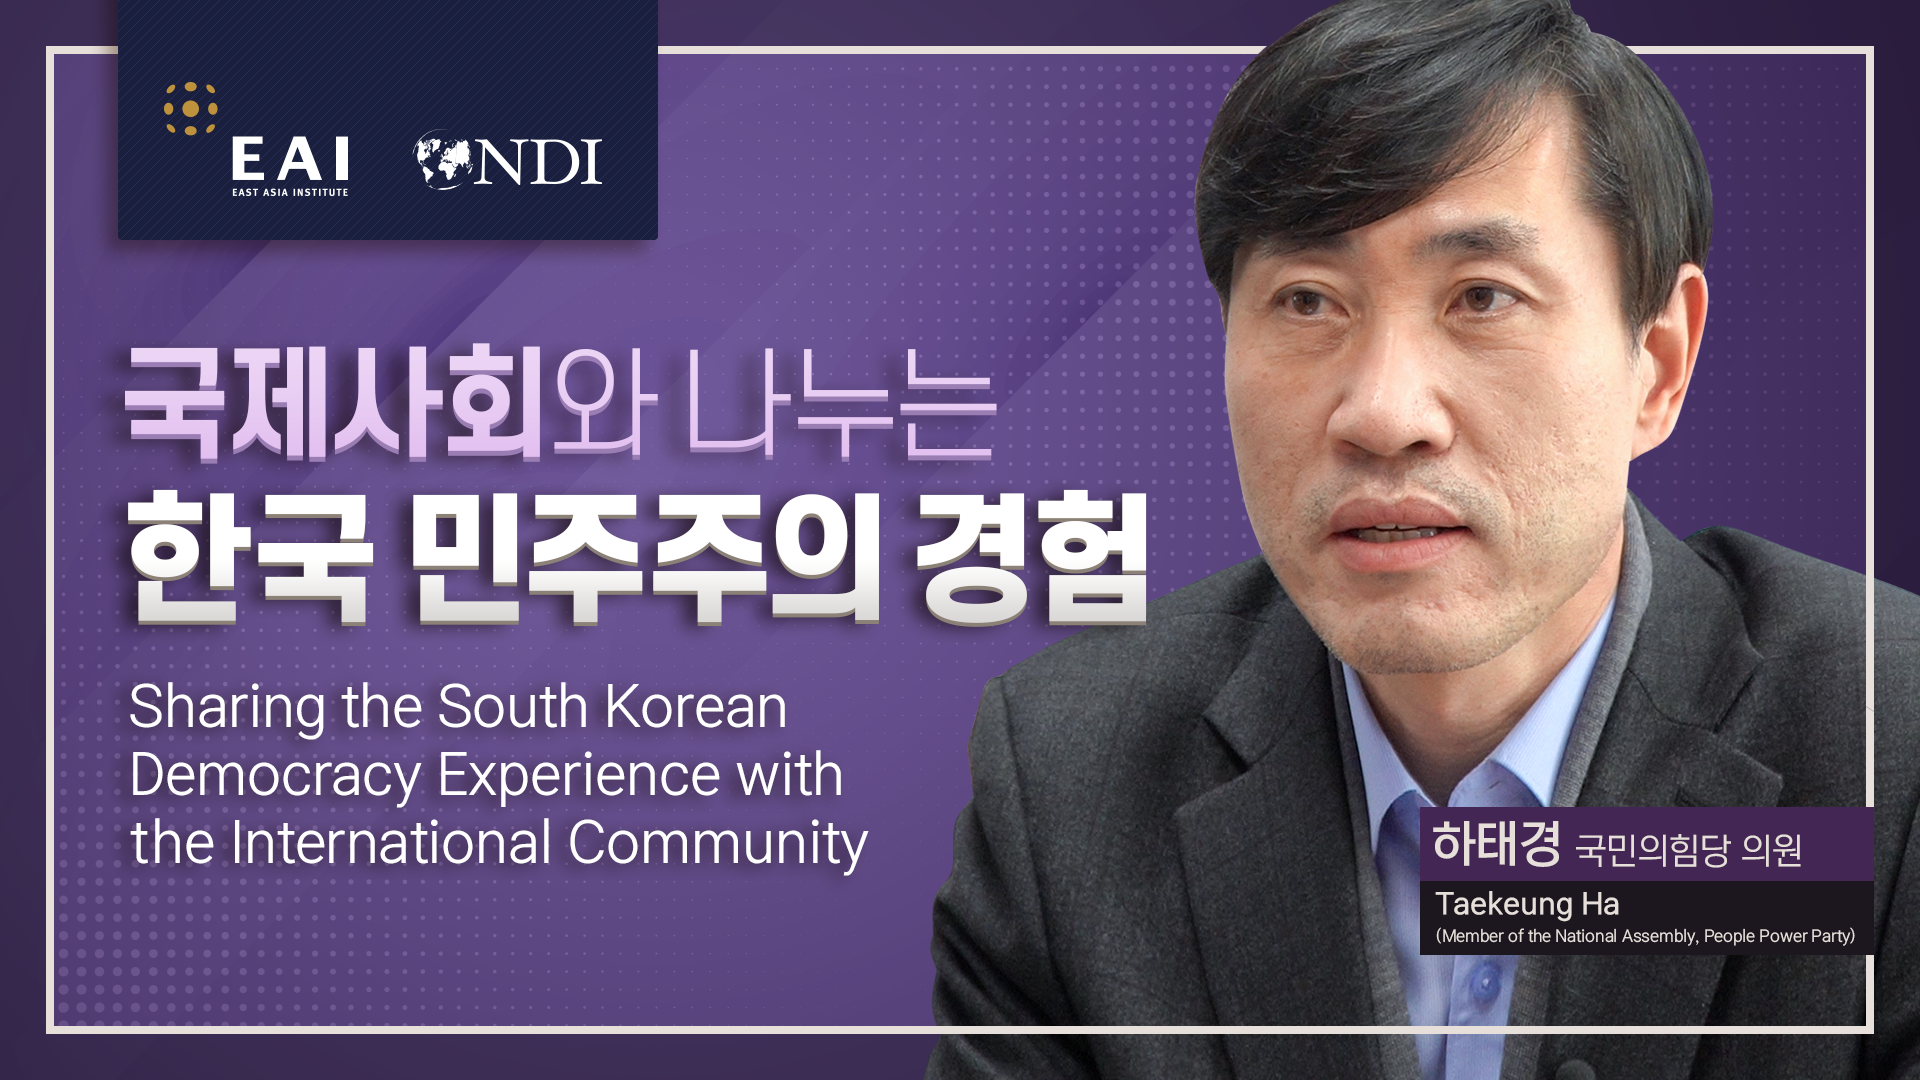 [민주주의 협력] 국제사회와 나누는 한국 민주주의 경험 인터뷰 II. 하태경 의원